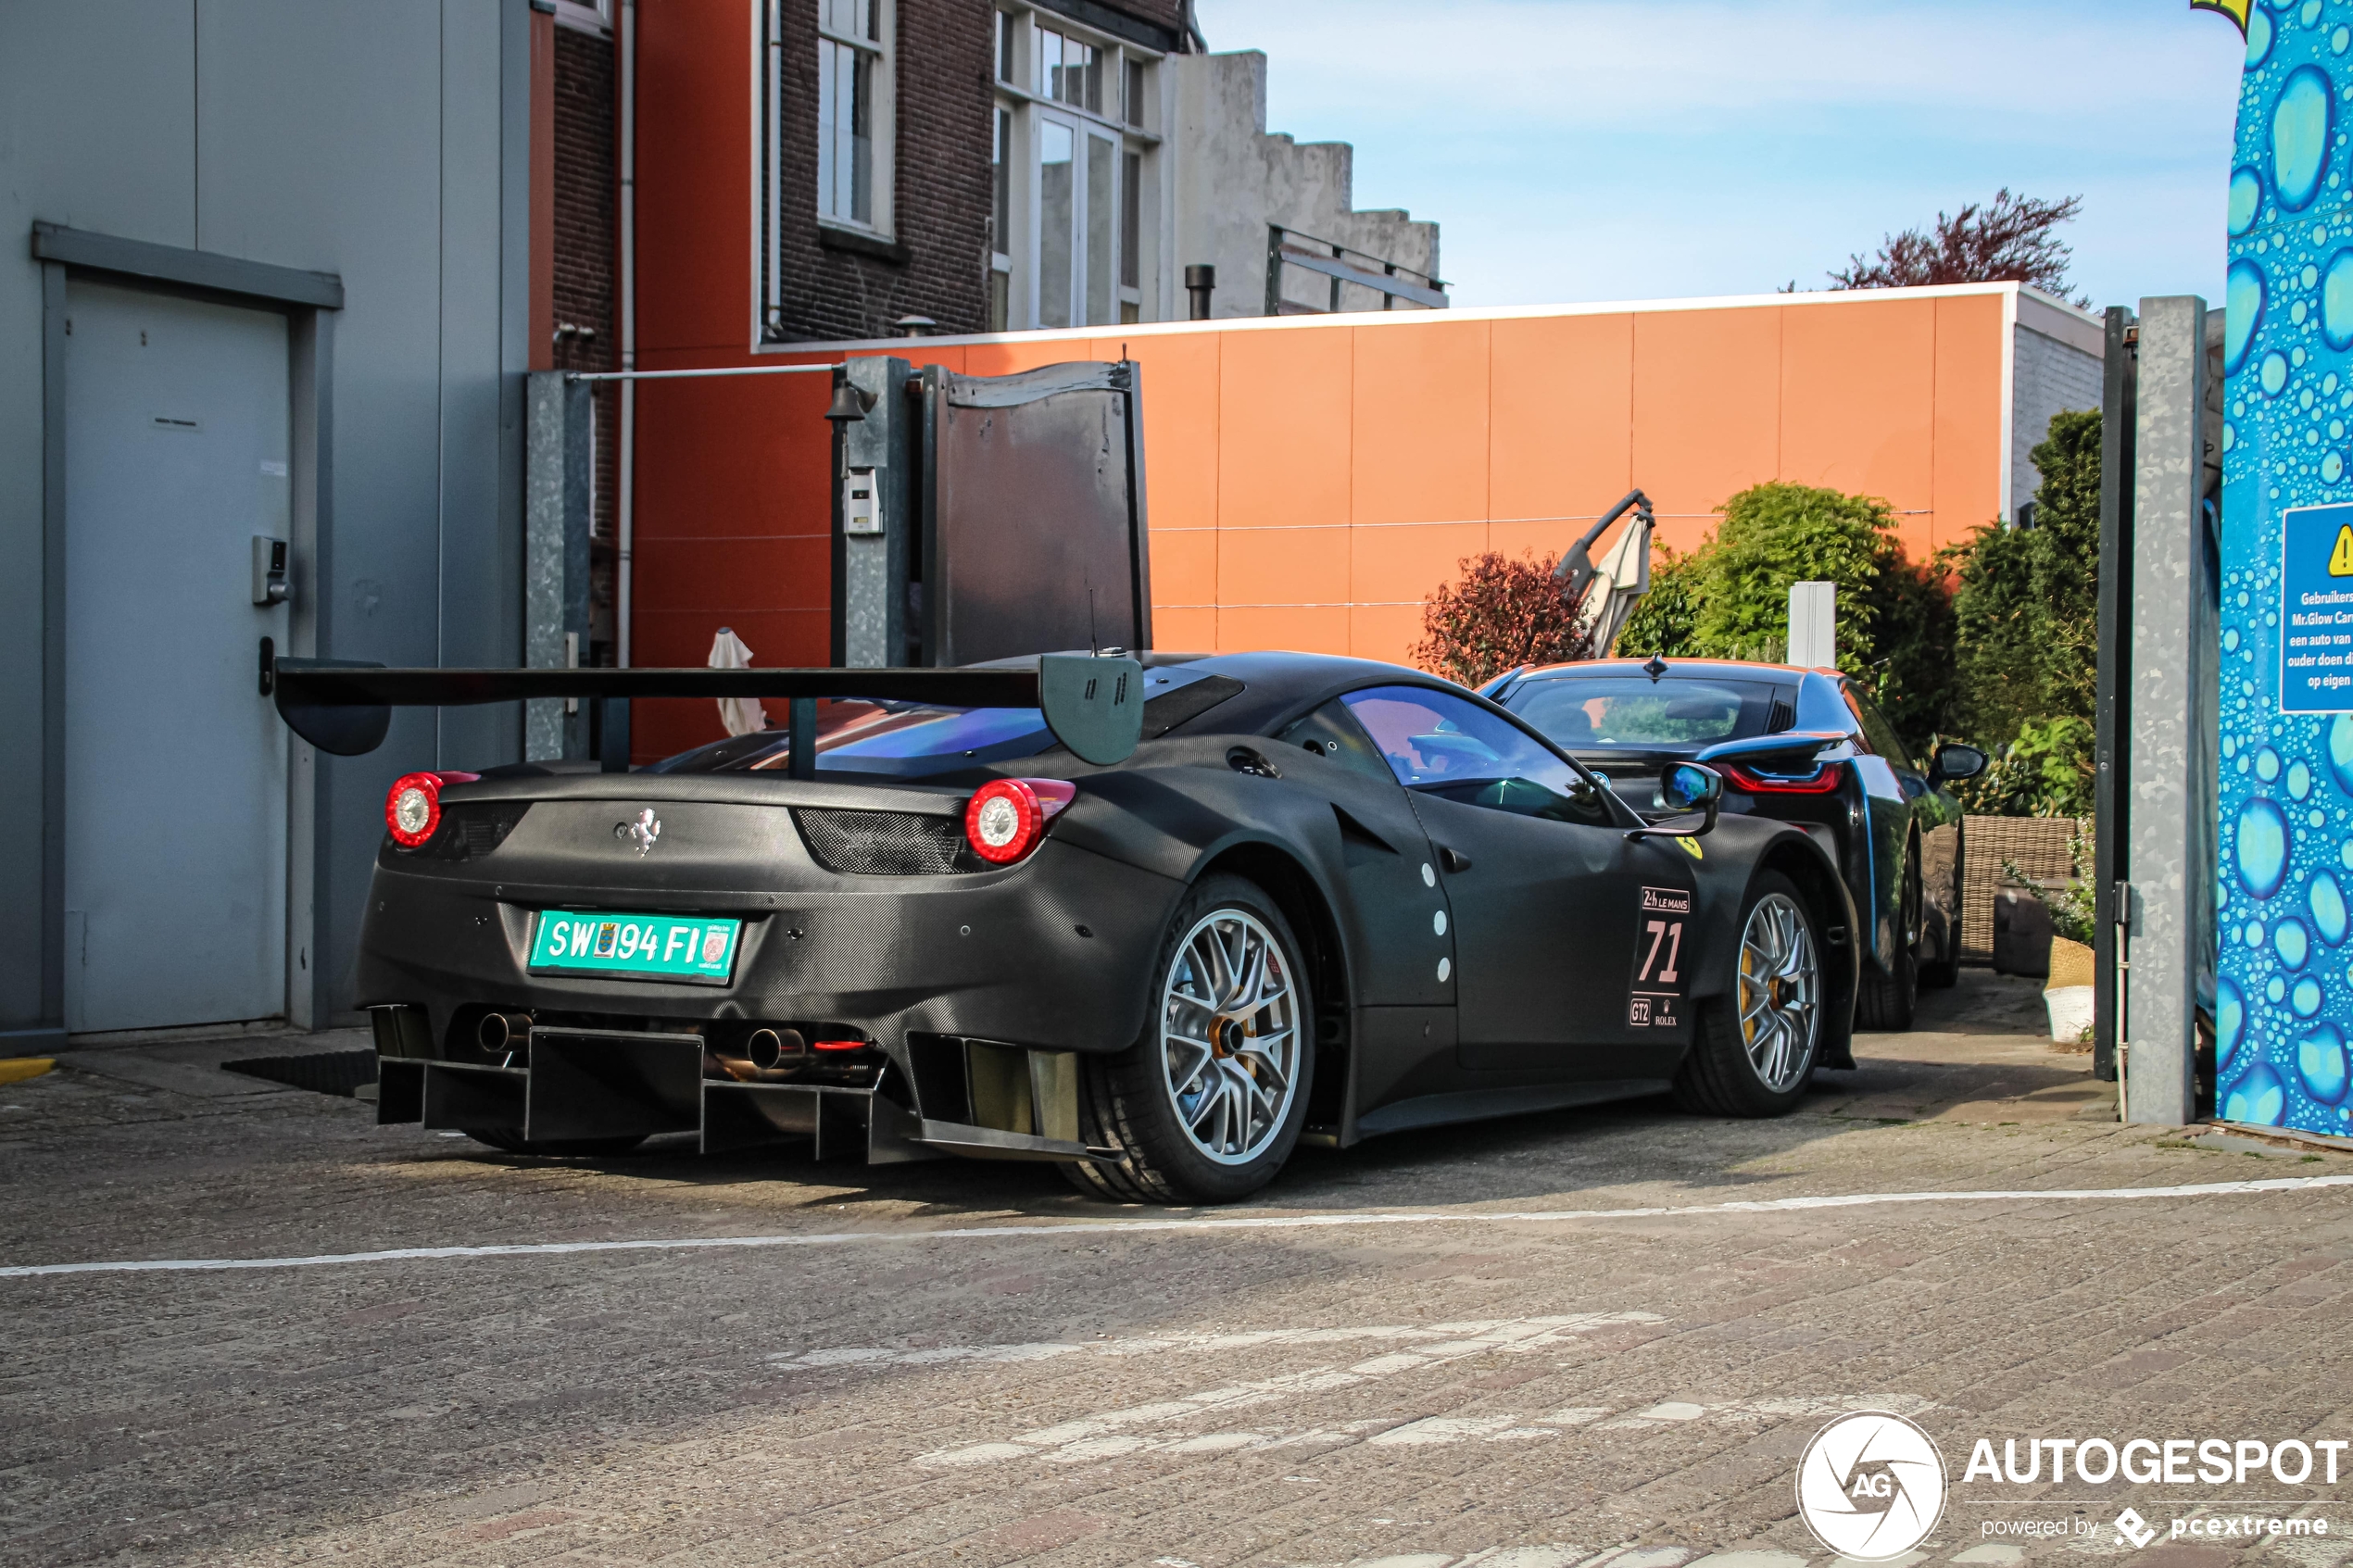 Raceauto voor de straat: Ferrari 458 Italia "GT2"